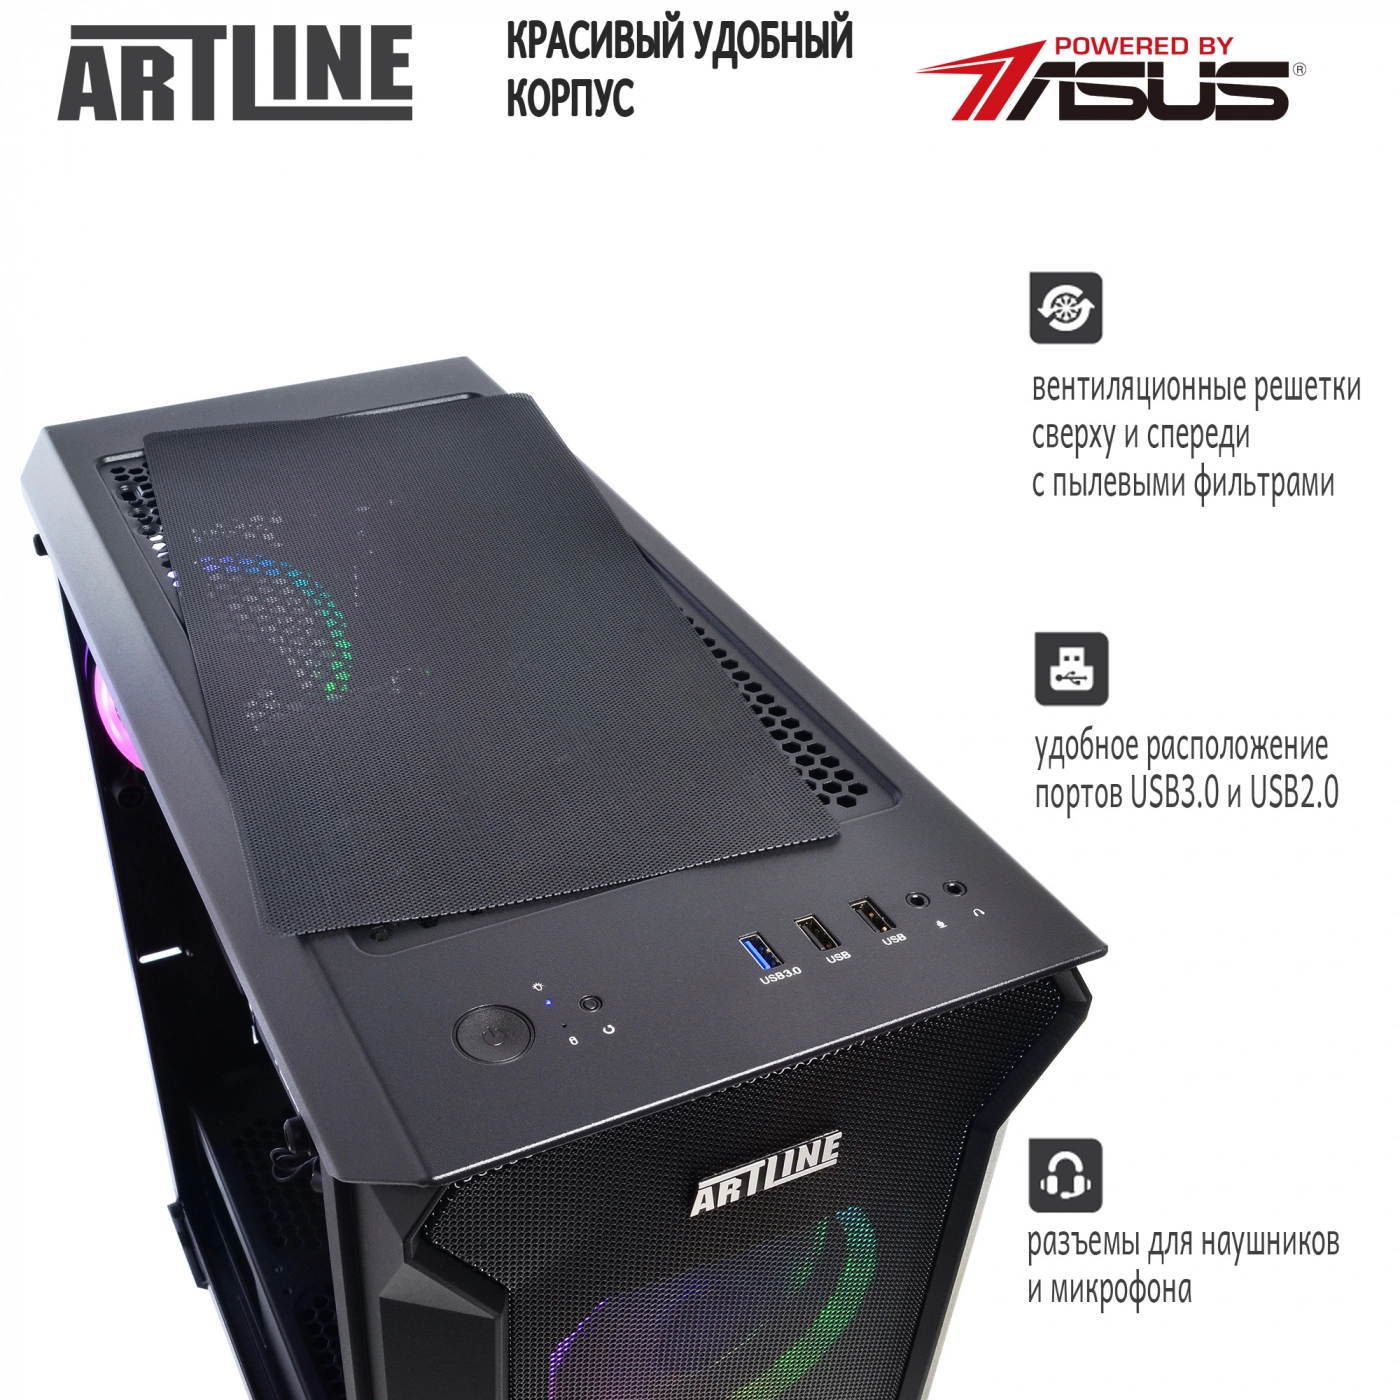 Купить Компьютер ARTLINE Gaming X87v20 - фото 5